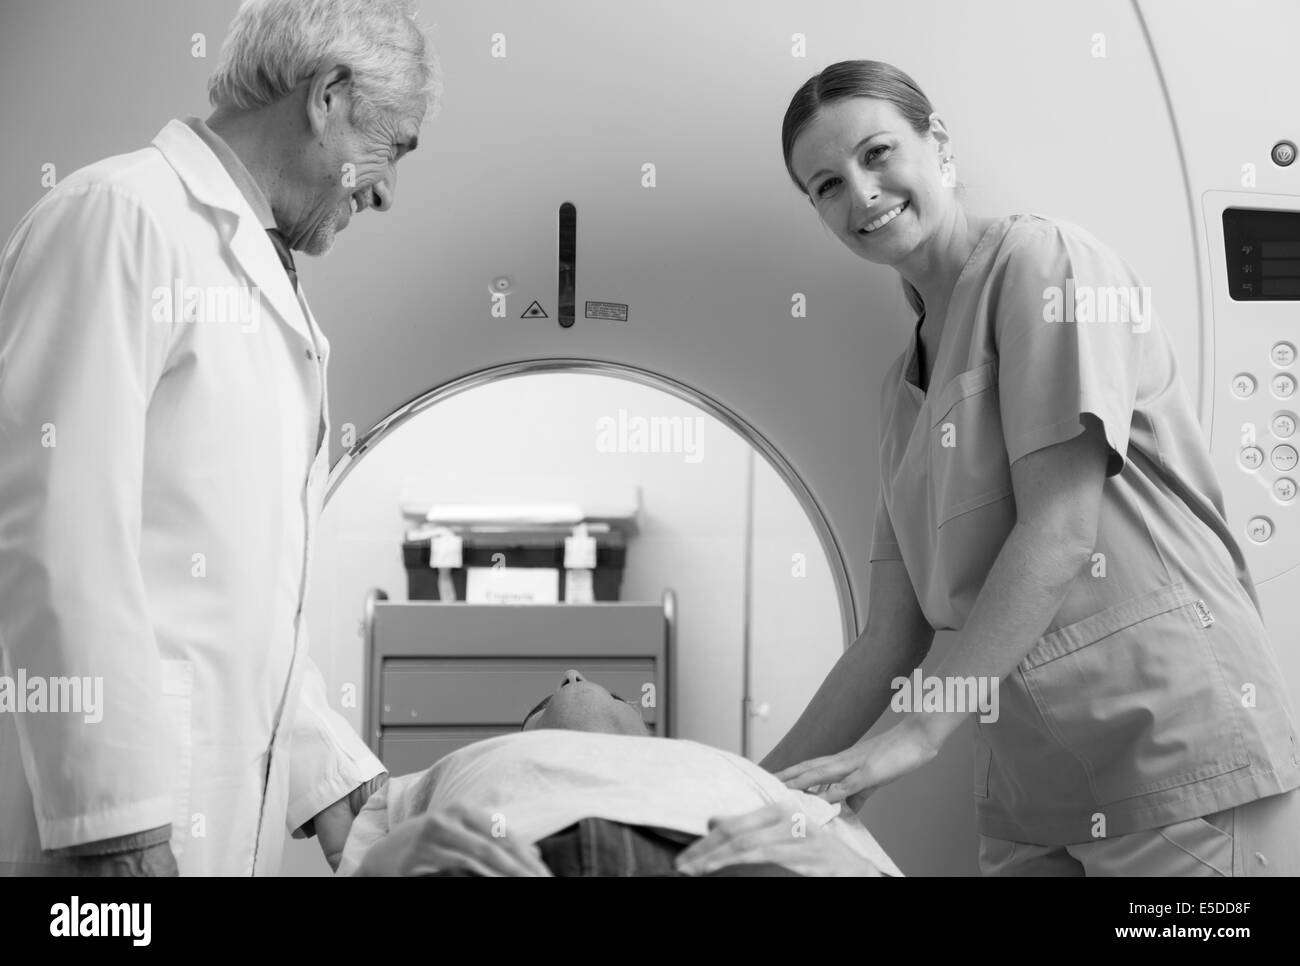 Mann in 40er Jahren offene MRT-Untersuchung unterziehen, männlichen und weiblichen Arzt lächelt ihn an. Stockfoto